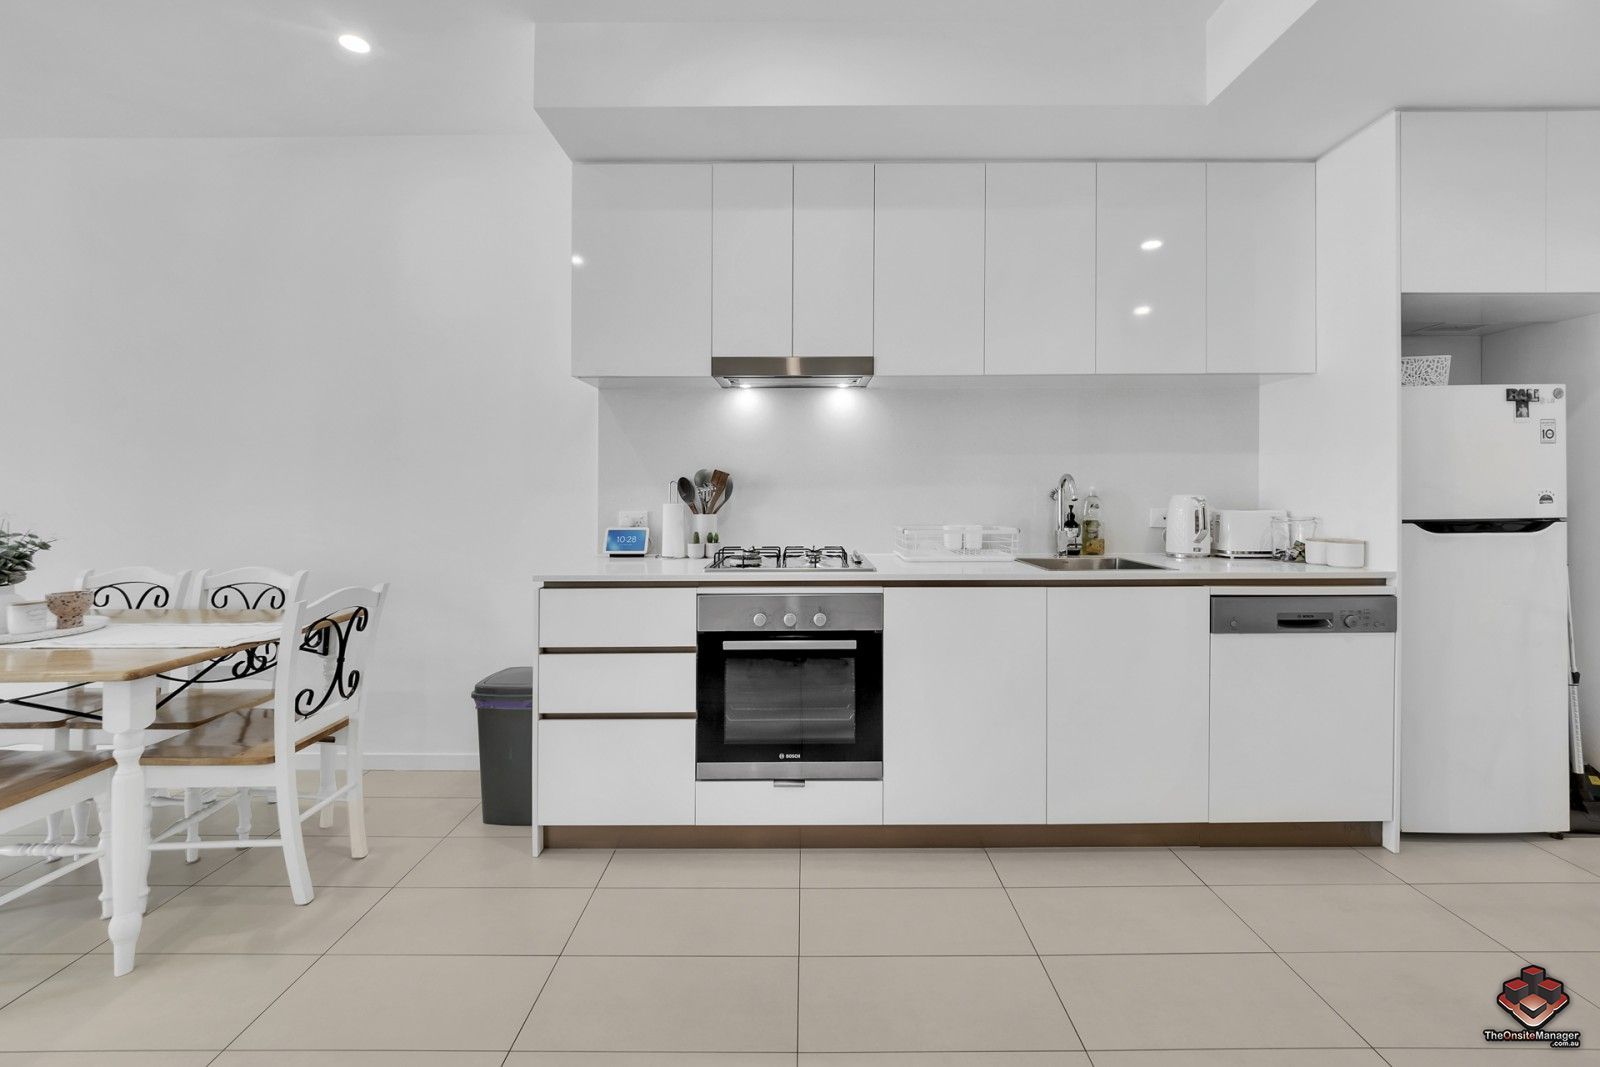 1 bedrooms Apartment / Unit / Flat in ID:21126900/24 Stratton Street NEWSTEAD QLD, 4006